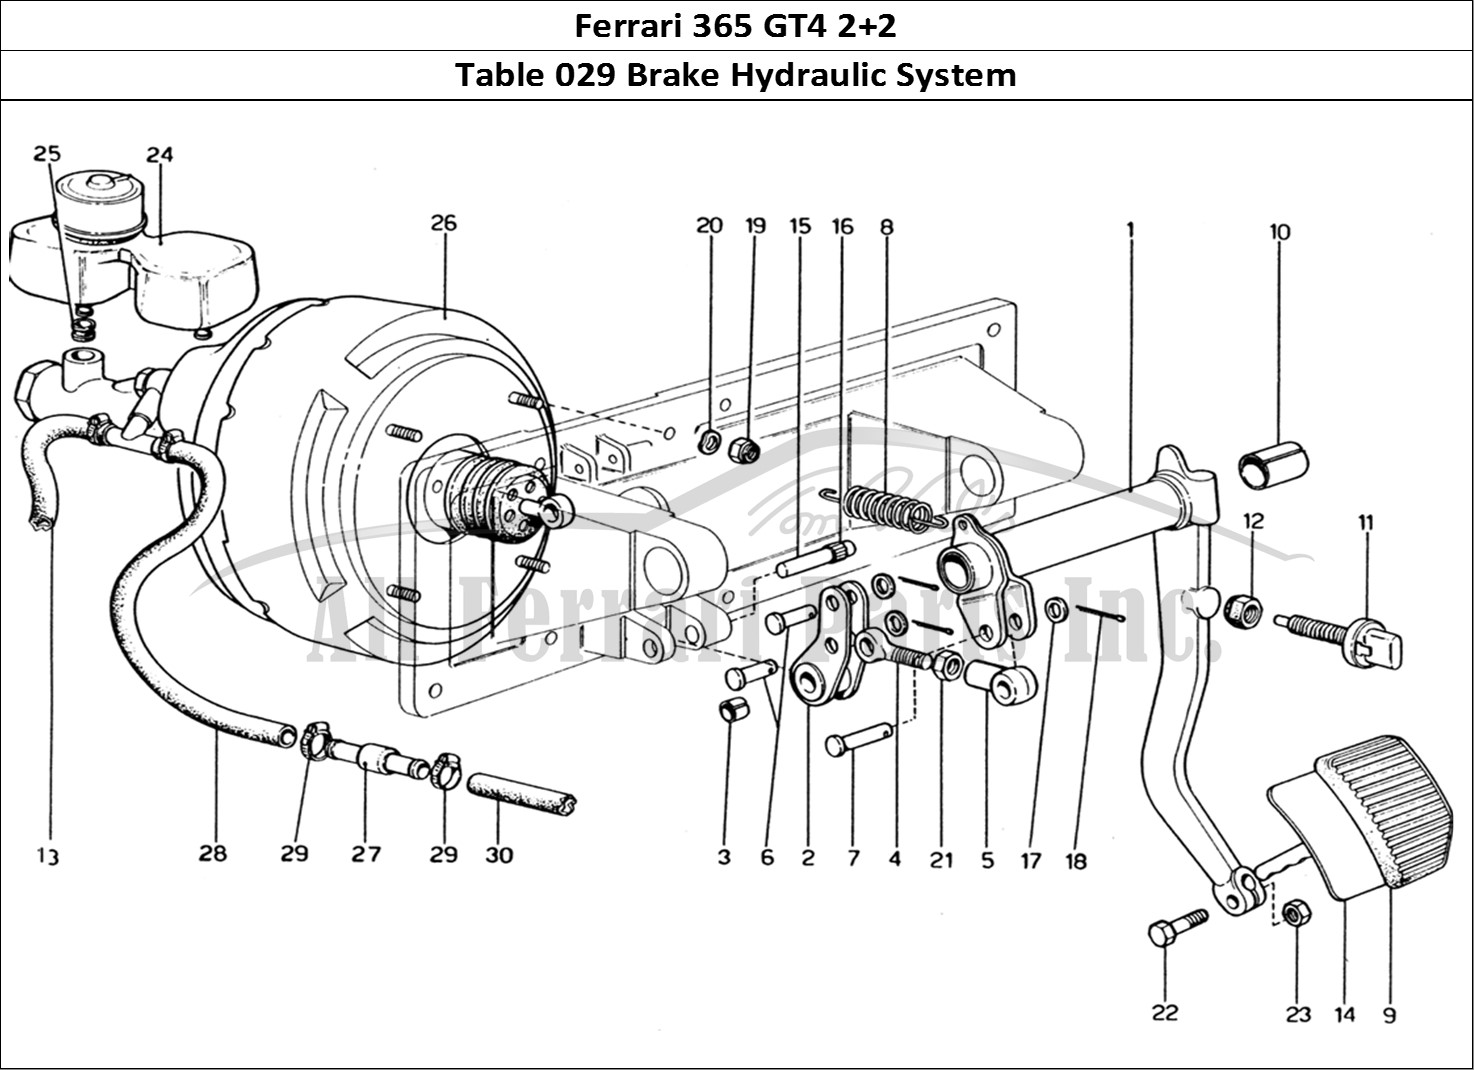 Ferrari Parts Ferrari 365 GT4 2+2 (1973) Page 029 Brake Hydraulic System